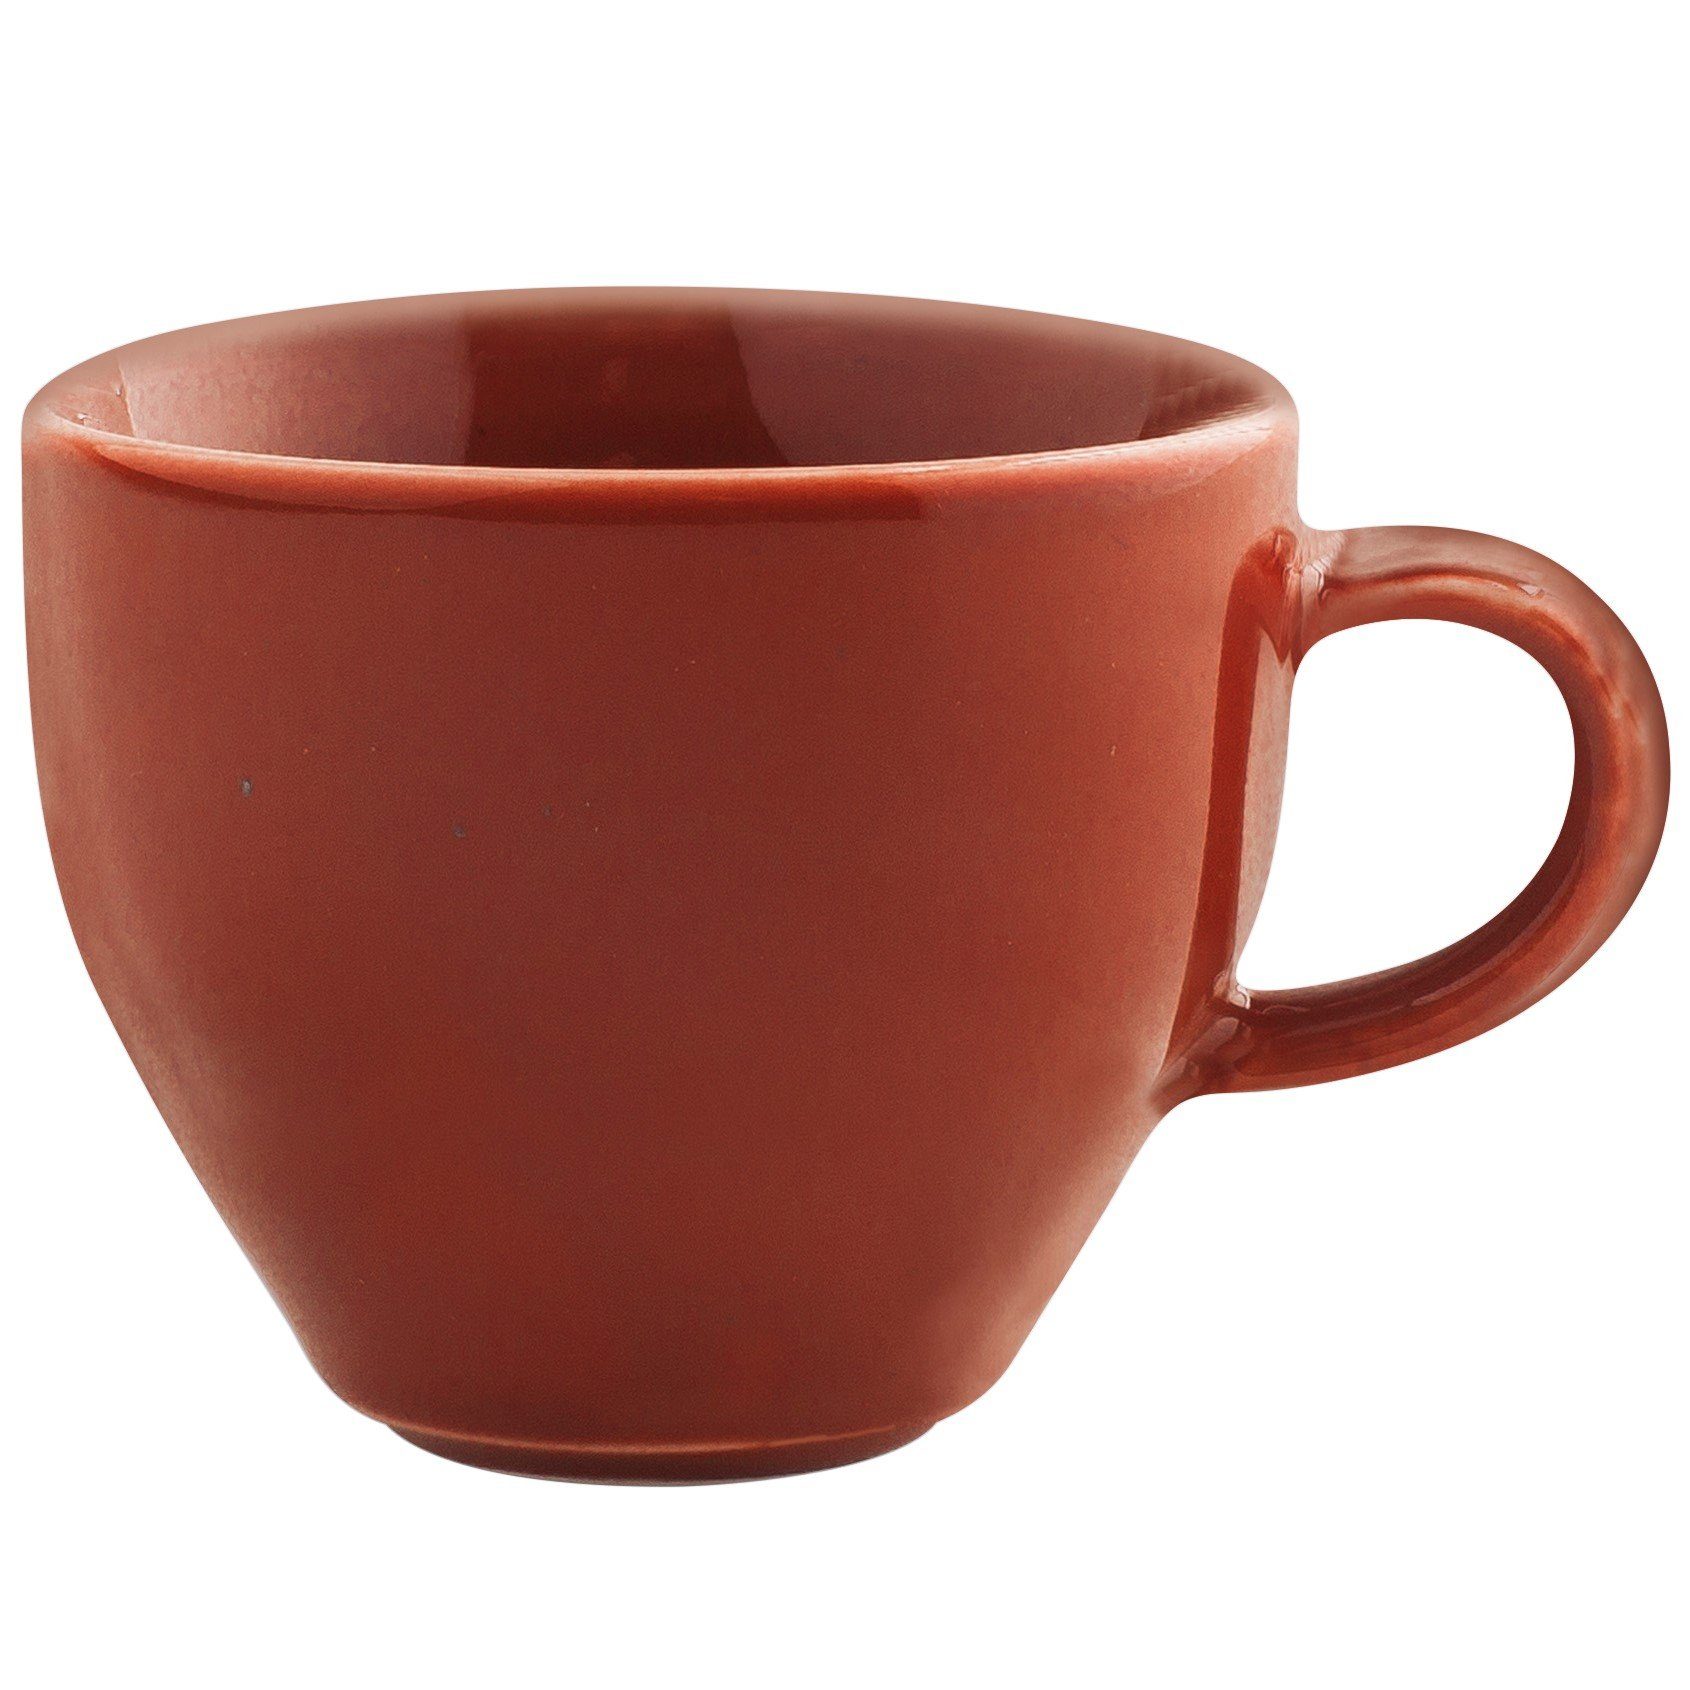 Kahla Tasse Homestyle Milchkaffeetasse 0,30 l, siena Made in Germany Handglasiert, red Porzellan